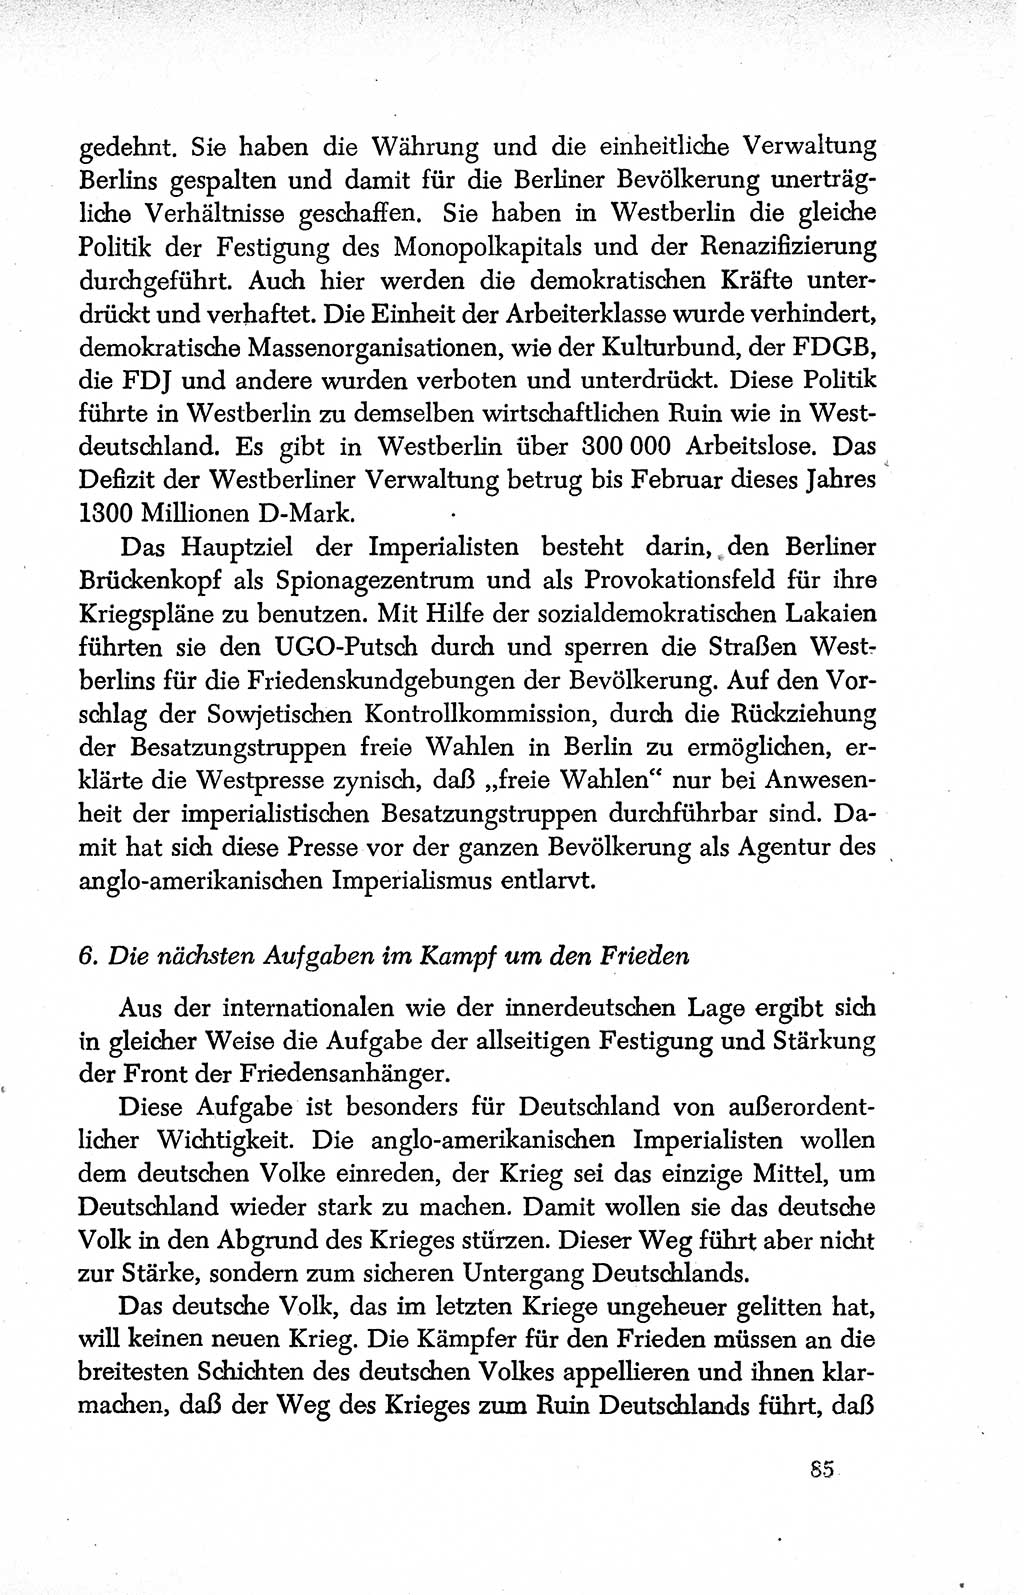 Dokumente der Sozialistischen Einheitspartei Deutschlands (SED) [Deutsche Demokratische Republik (DDR)] 1950-1952, Seite 85 (Dok. SED DDR 1950-1952, S. 85)